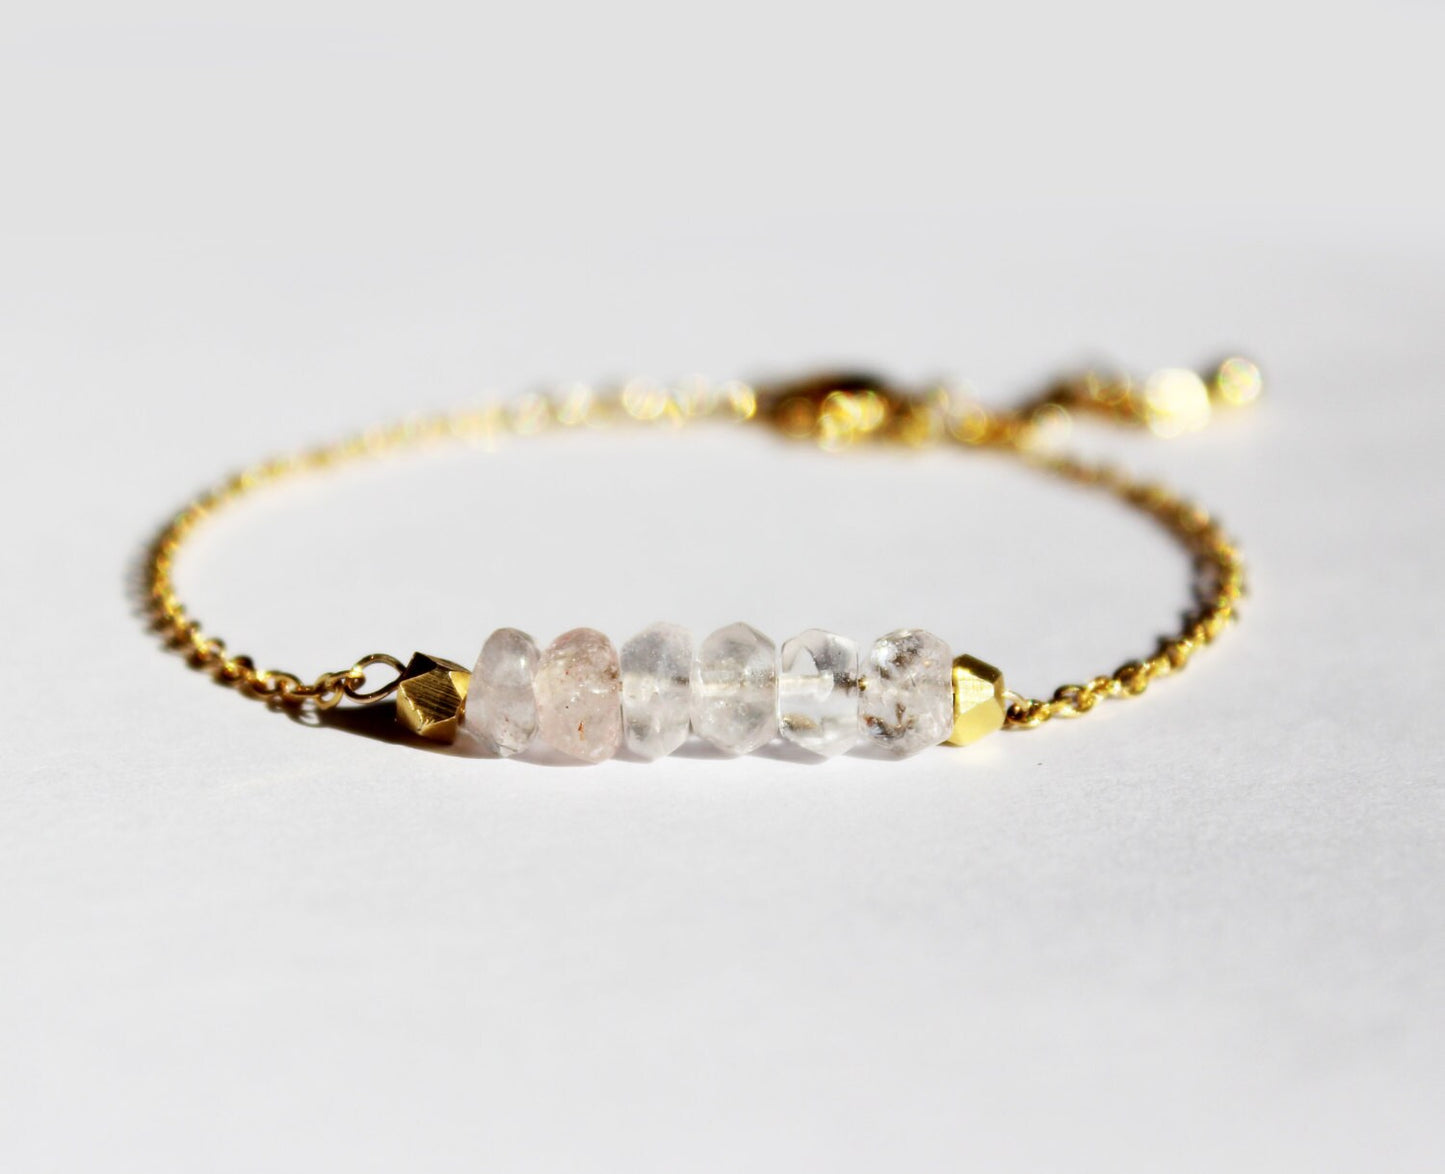 Rose Quartz and Gold Bracelet // Gold Rose Quartz Bracelet // Minimalist Jewelry // Pink and Gold Bracelet // Gift for Her